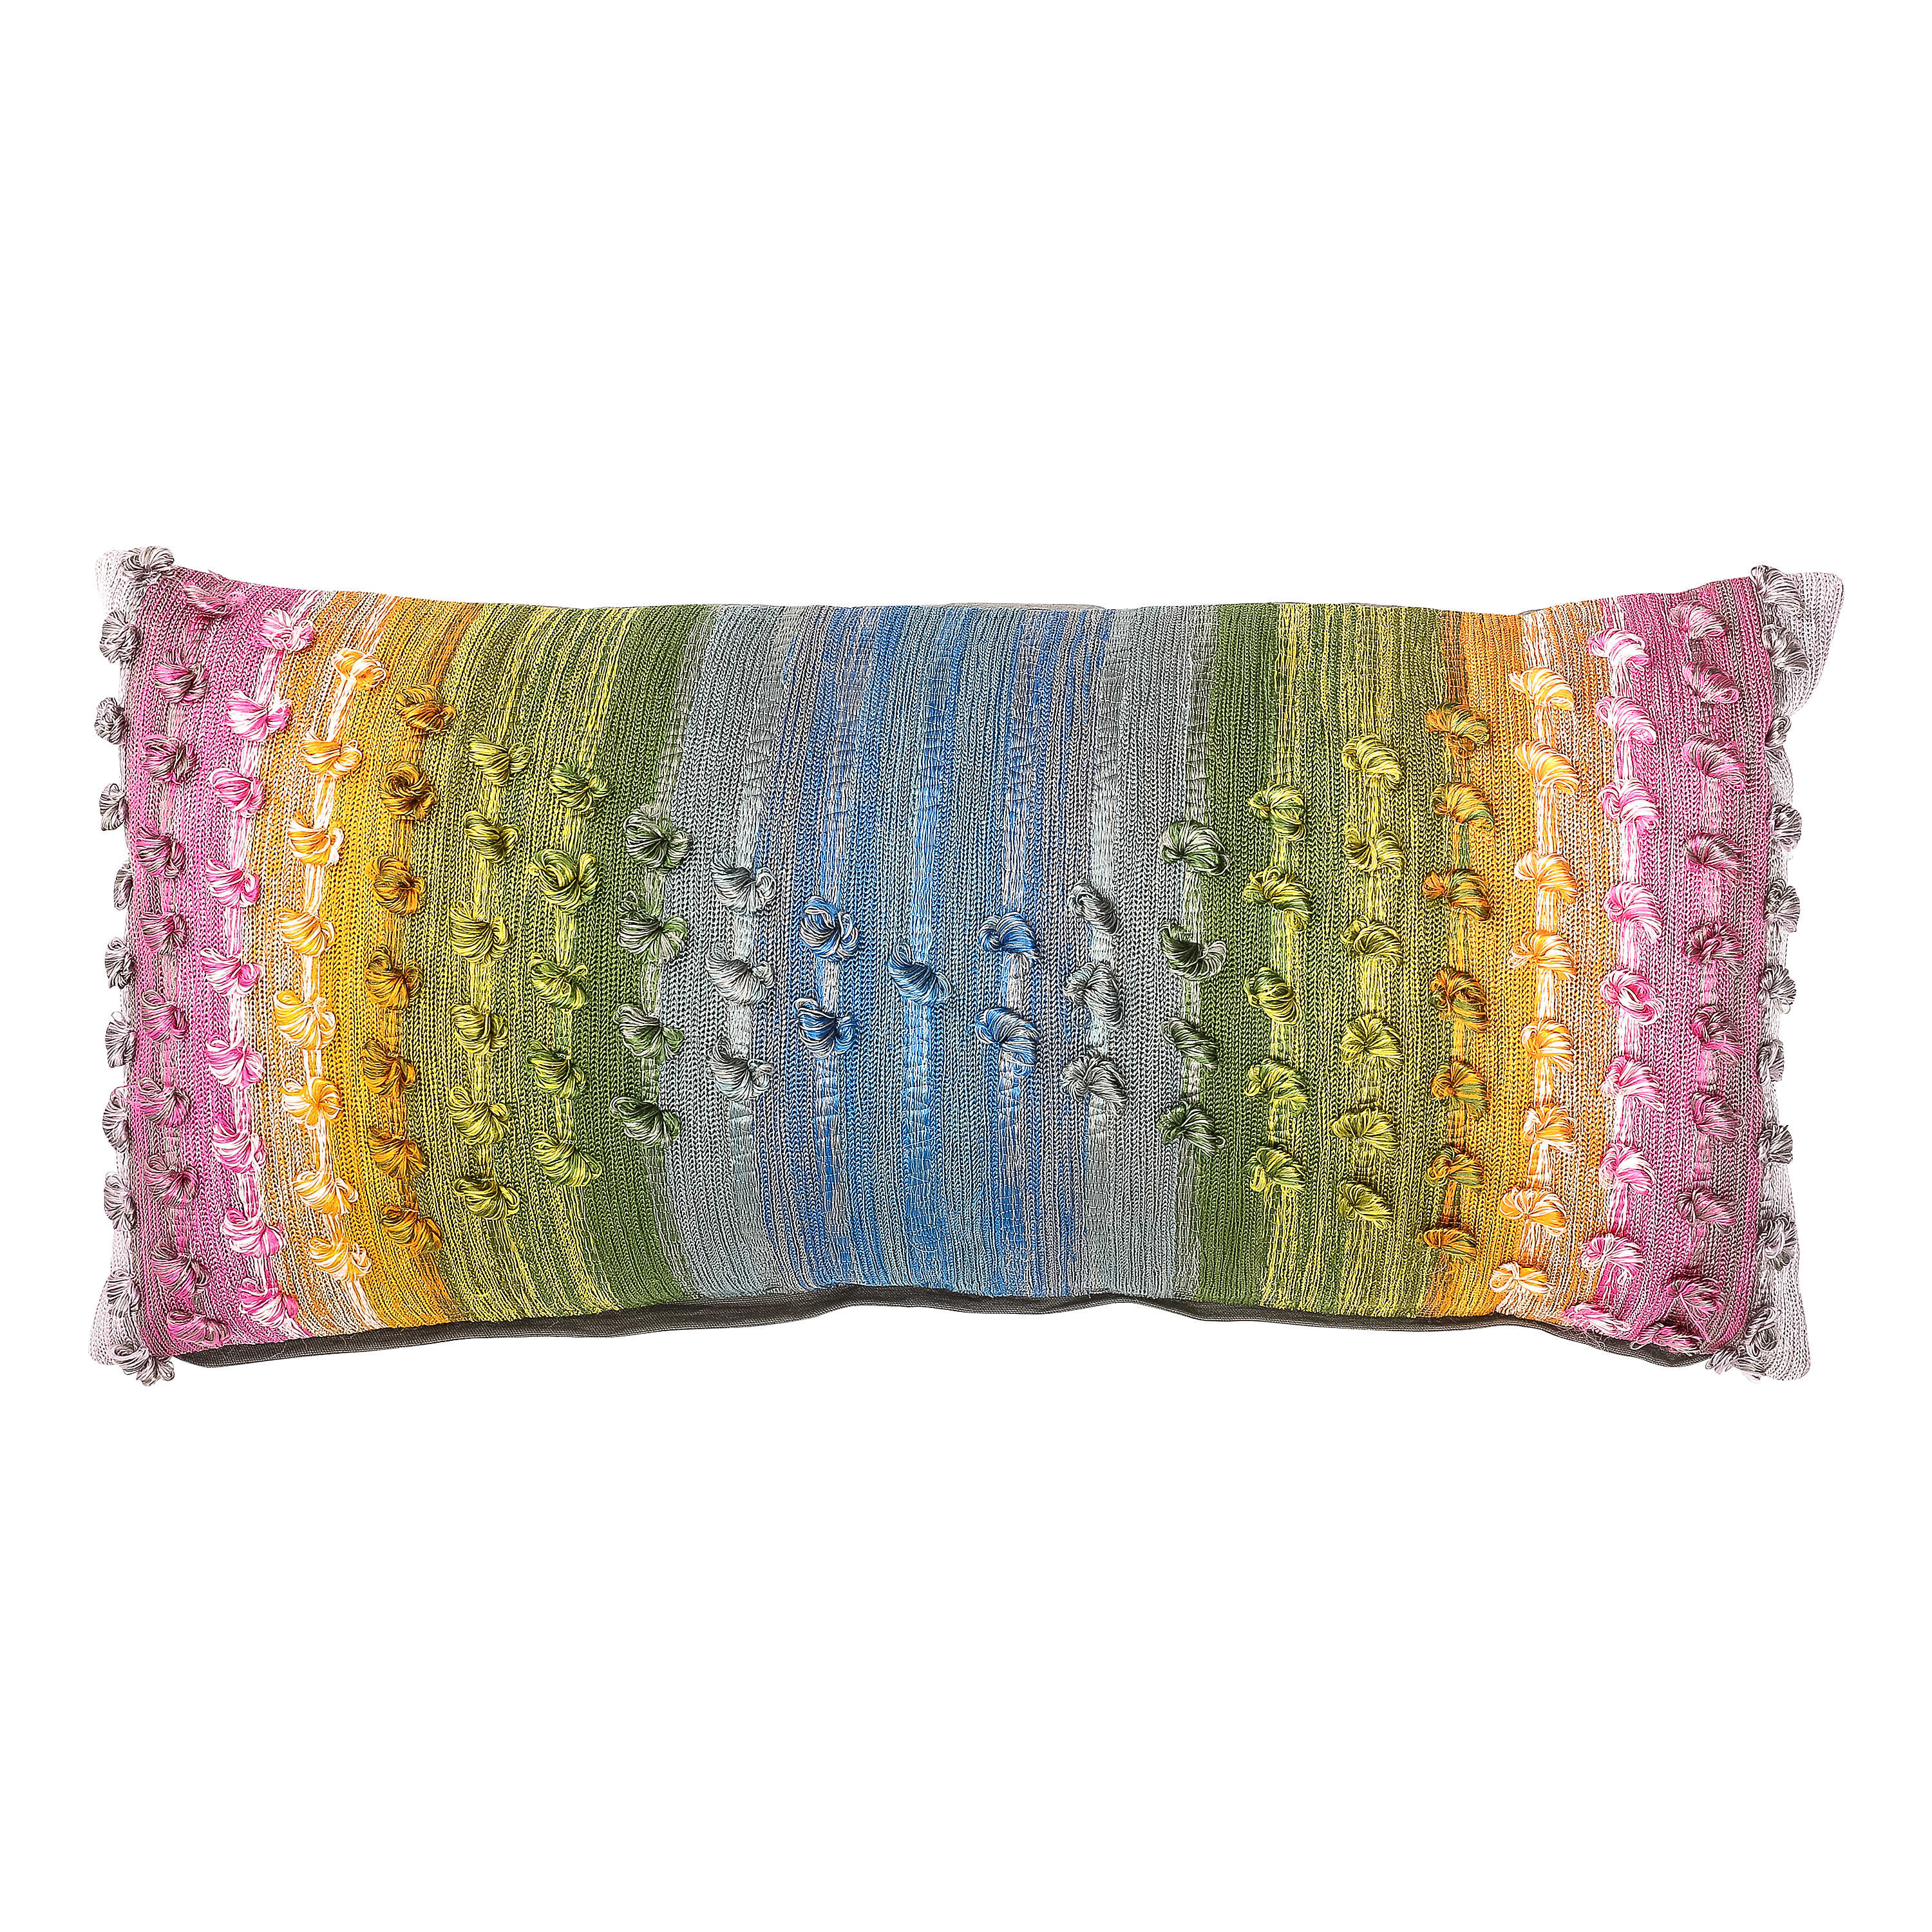 Mosaic Rainbow Long Lumbar Pillow mackenzie-childs Panama 0